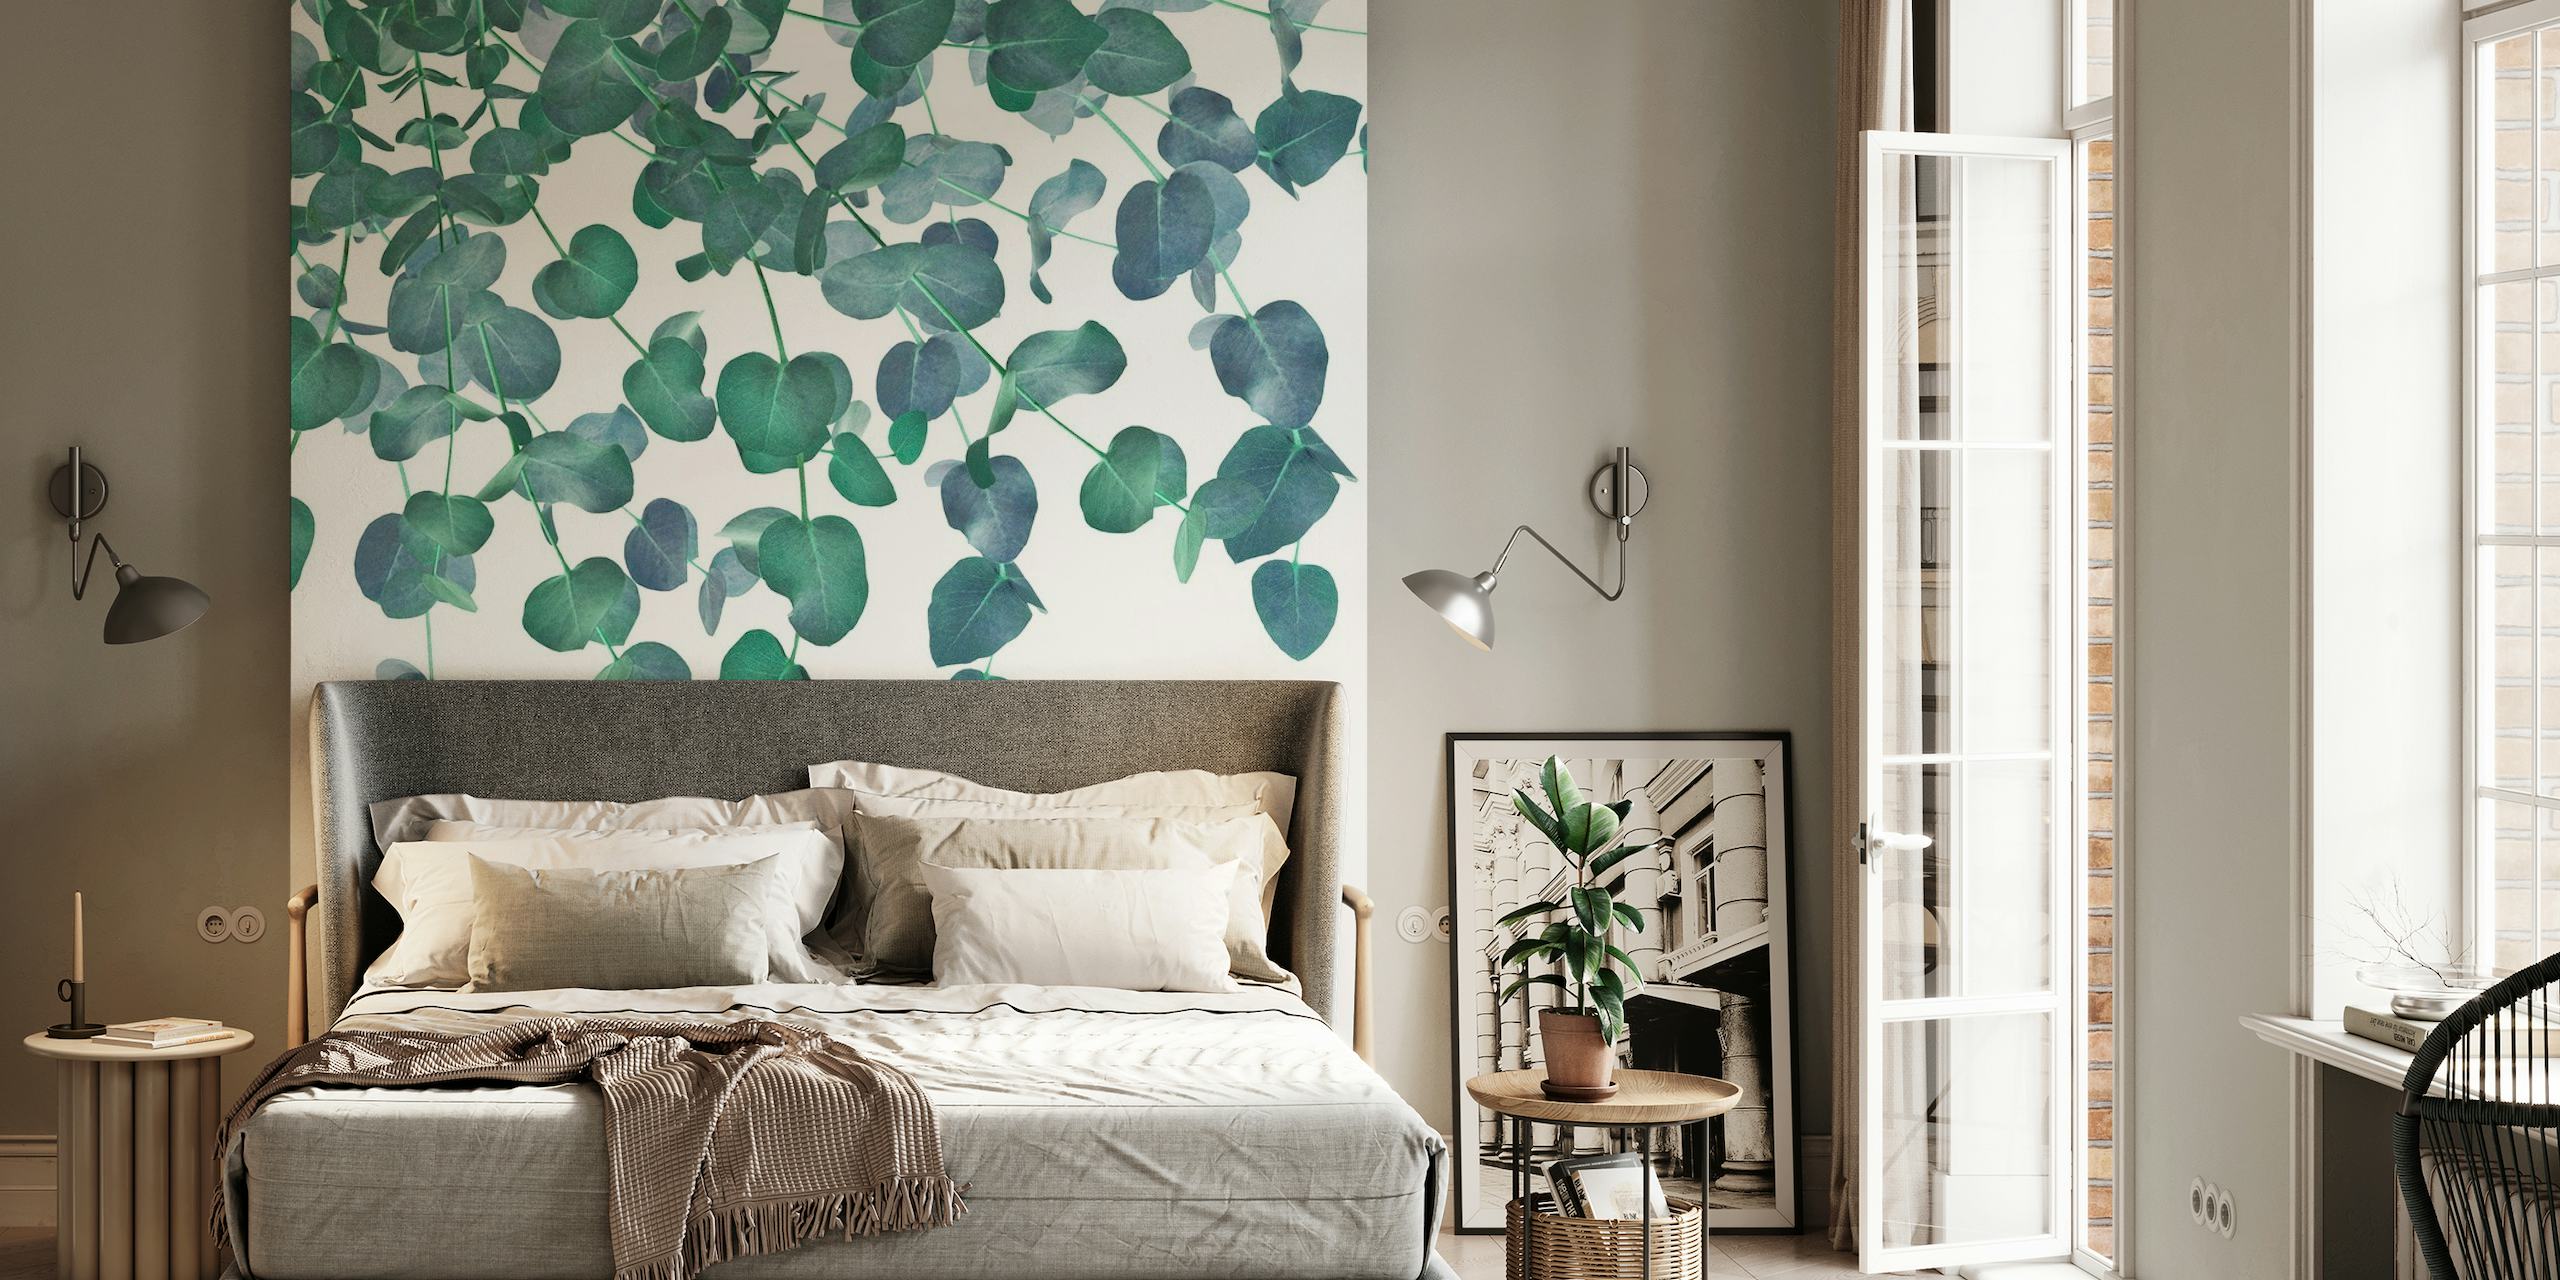 Zidna slika s listovima eukaliptusa stvara spokojnu pozadinu